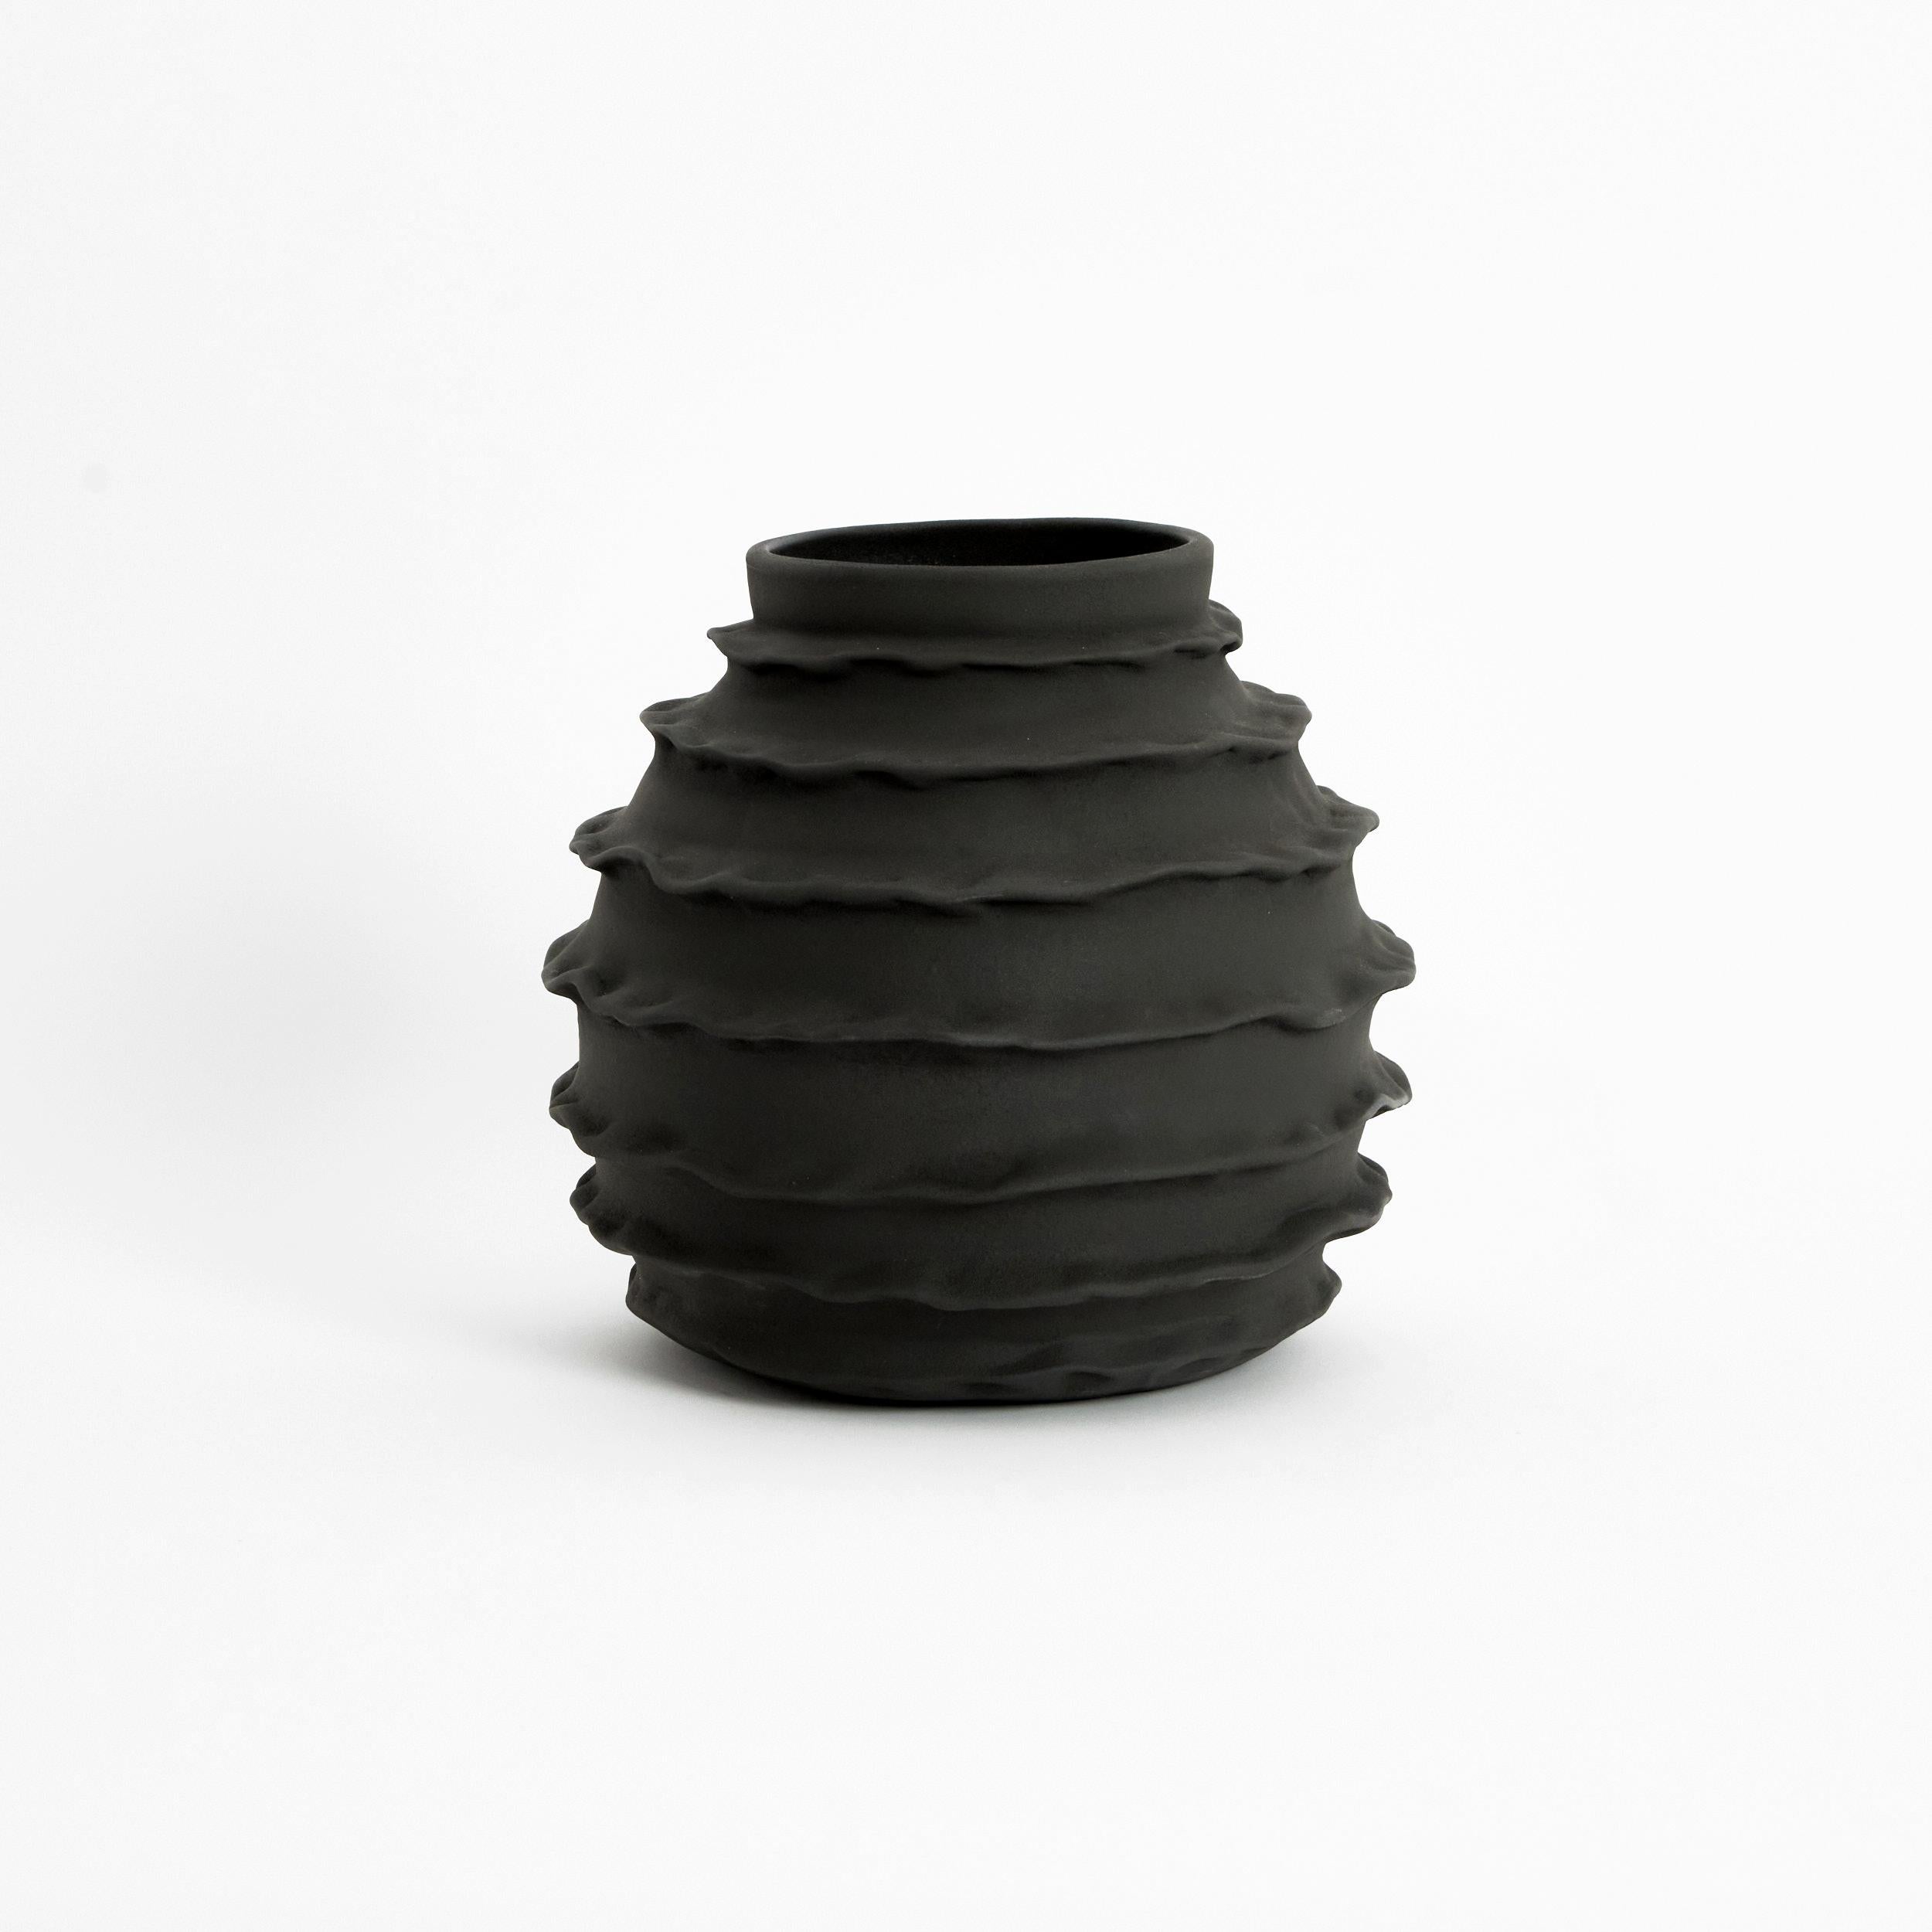 Urlaubsvase in staubigem Schwarz.

Entworfen von Project 213A im Jahr 2021 aus handgefertigtem Steingut.

Die ovale, an den Rändern gekräuselte Vase sorgt für einen Kontrast der Leichtigkeit. Diese handgefertigte und verzierte Vase ist mit einer